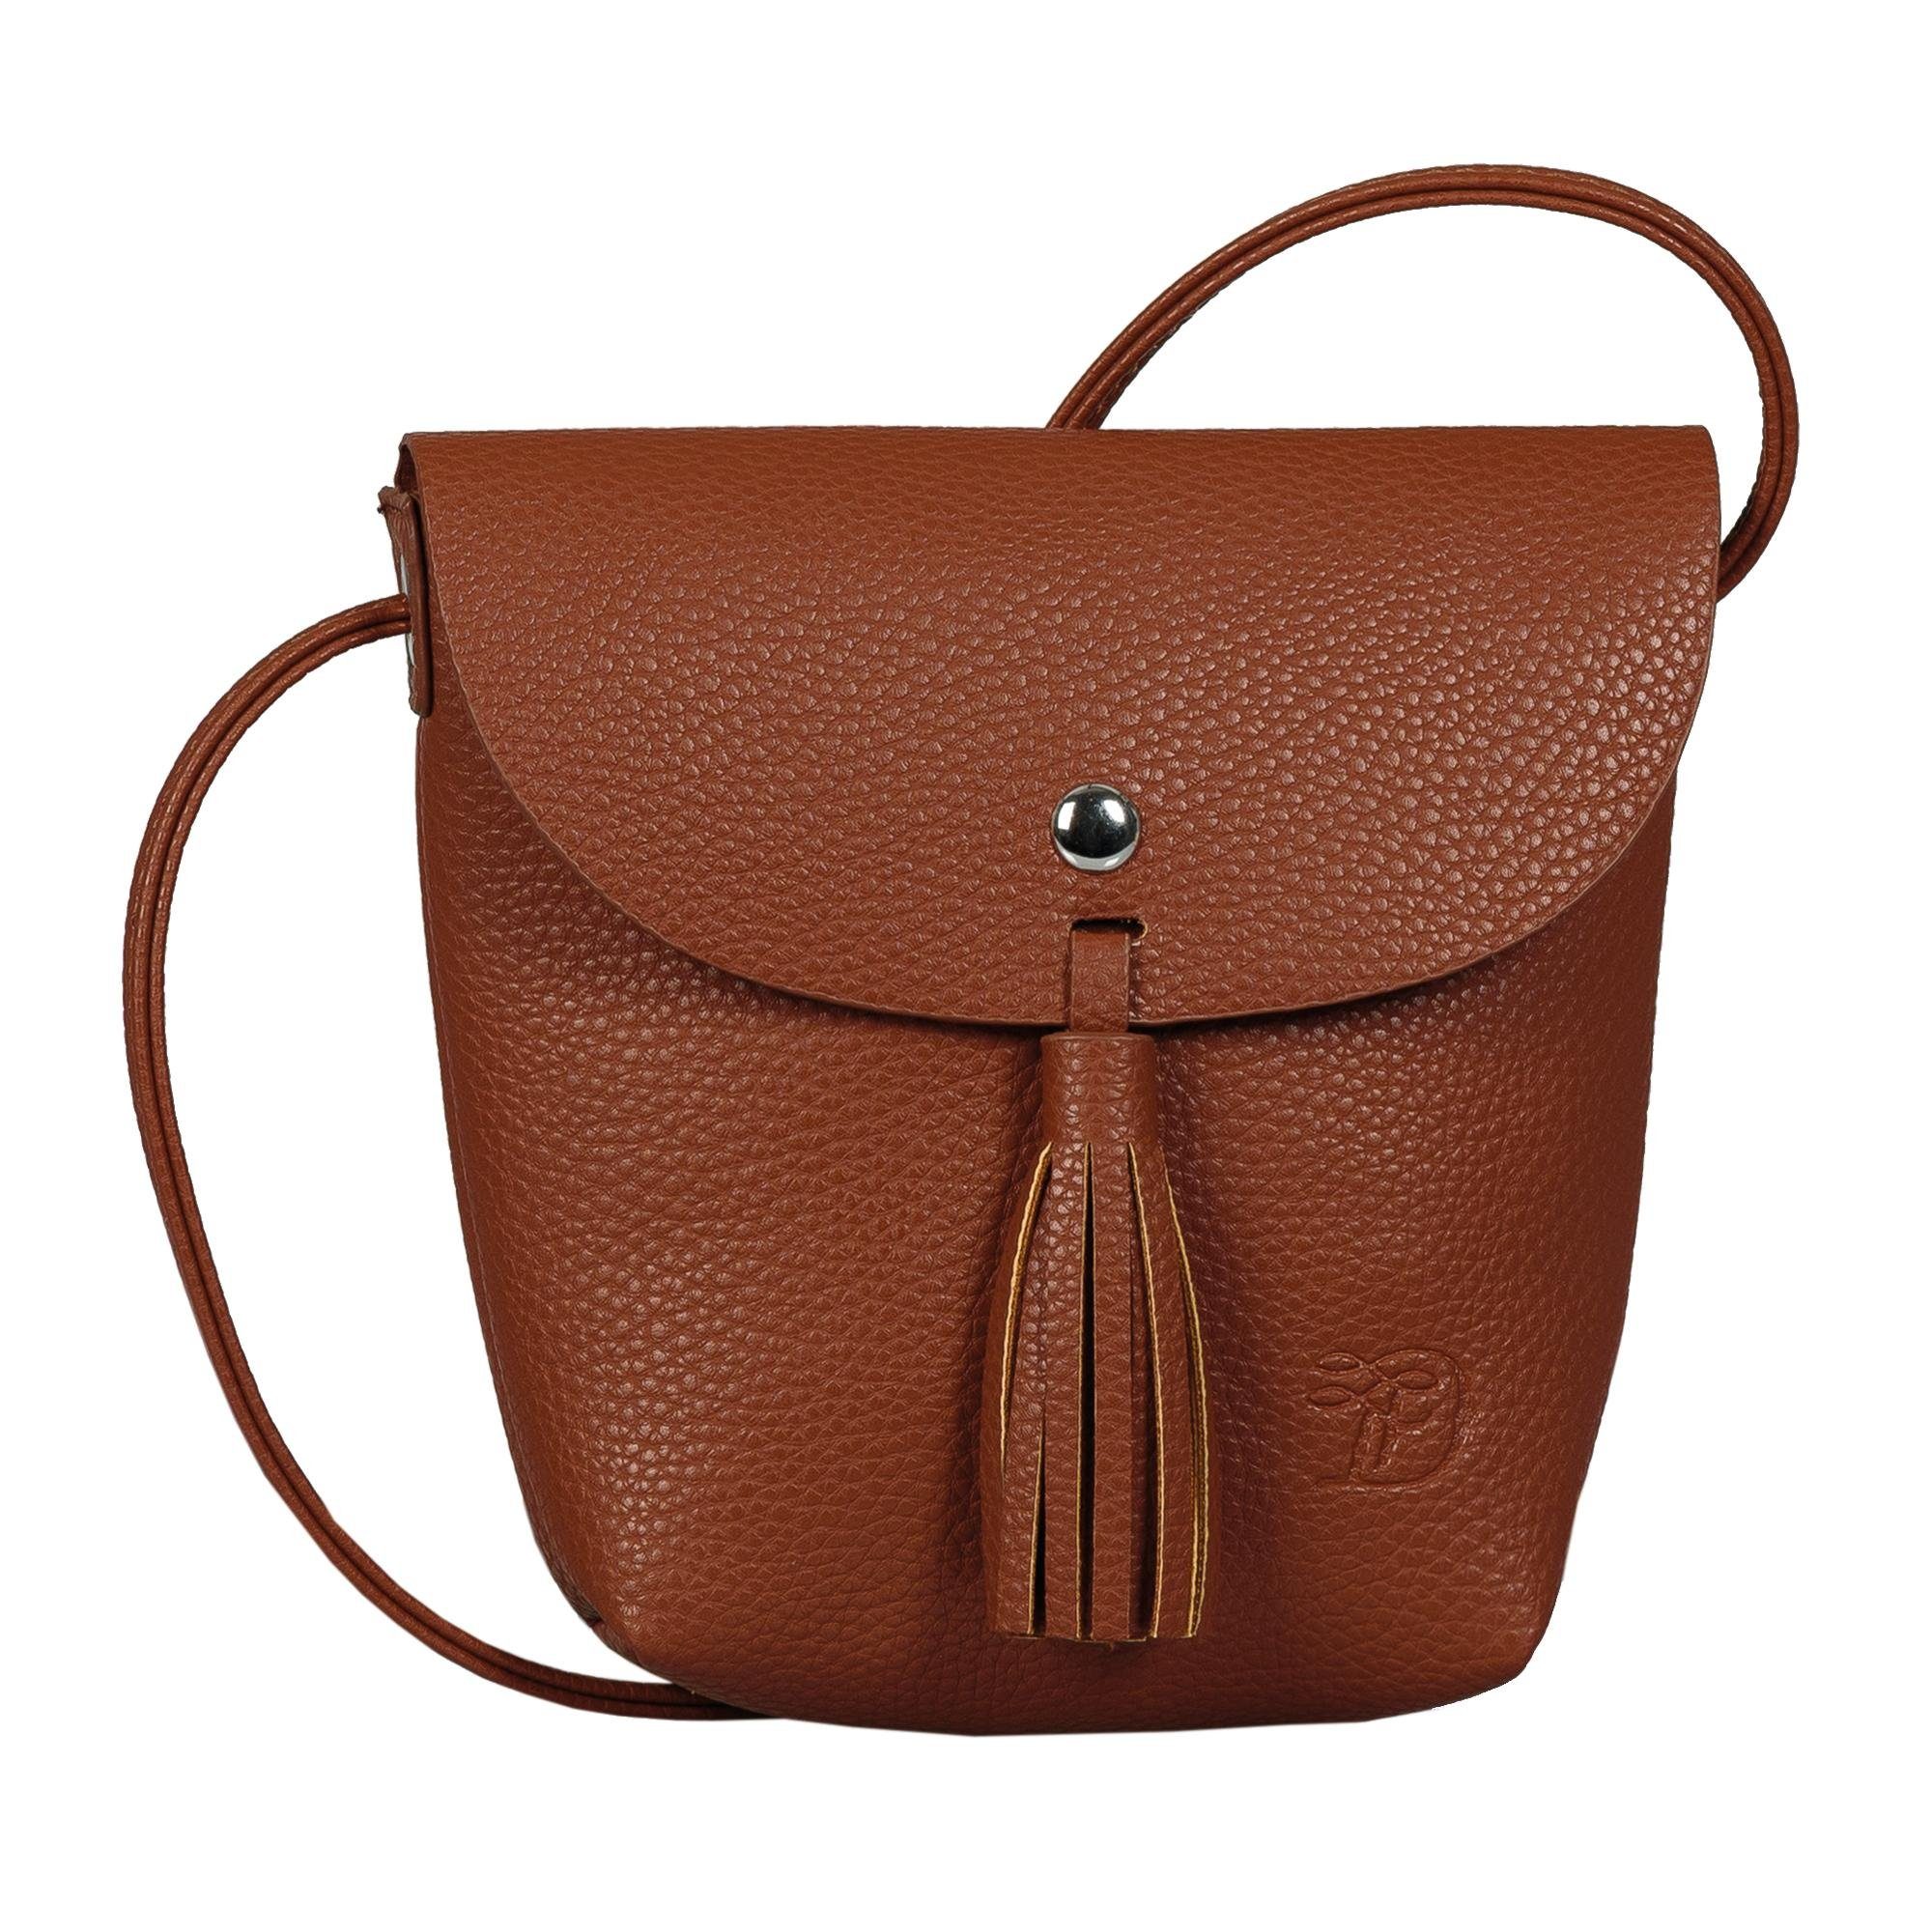 Handtasche in braun online kaufen | OTTO